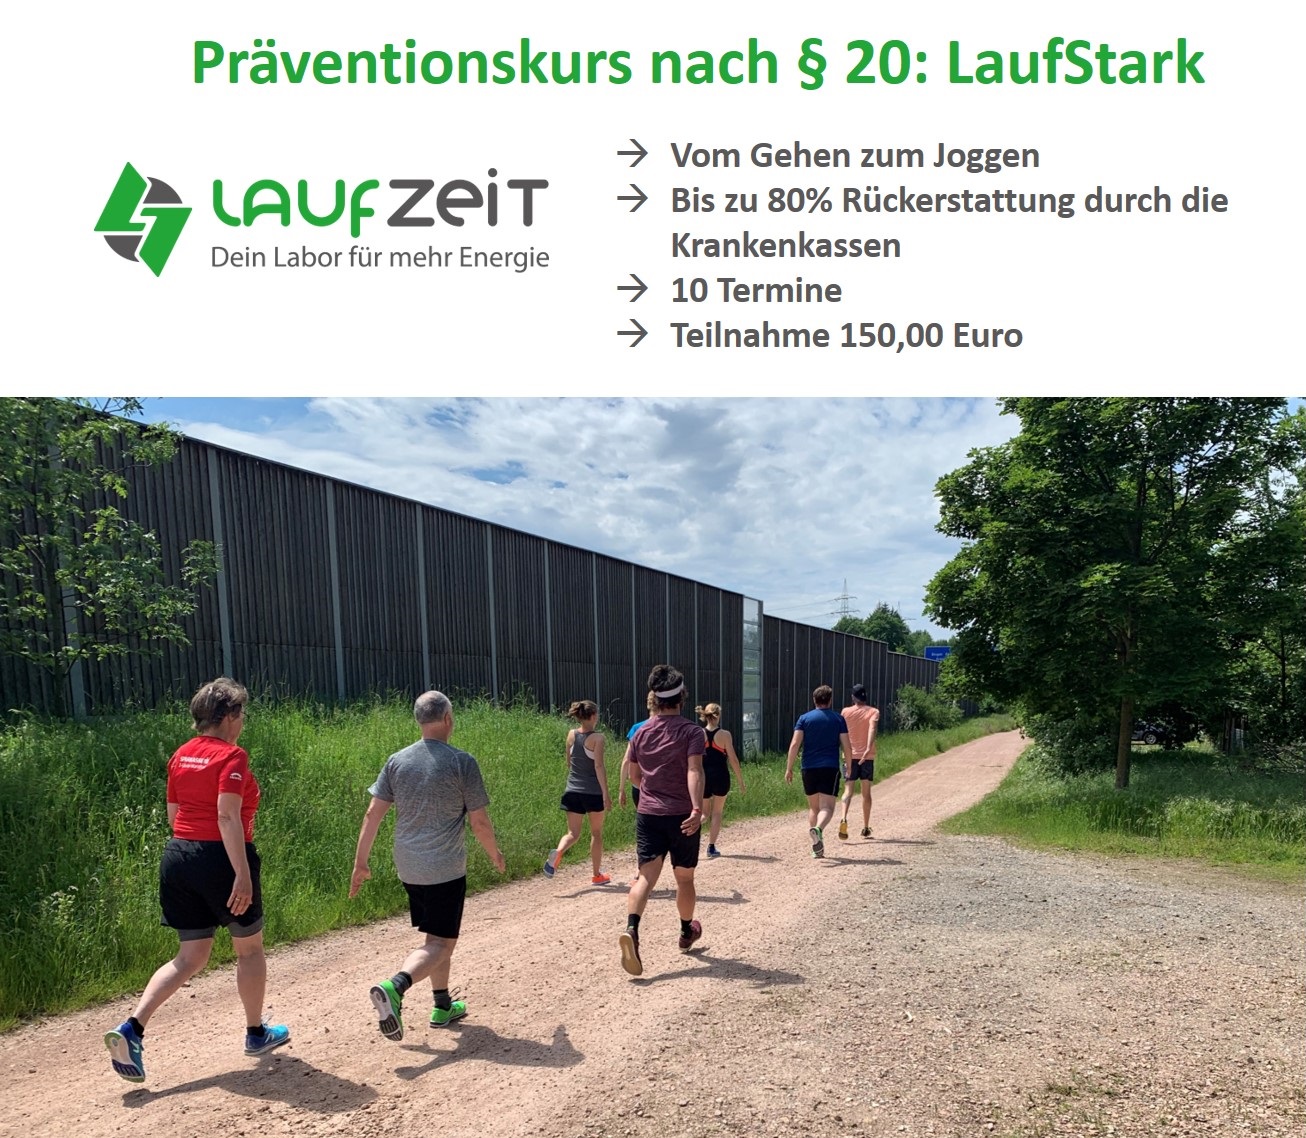 LaufZeit - Lauflabor und Running Store